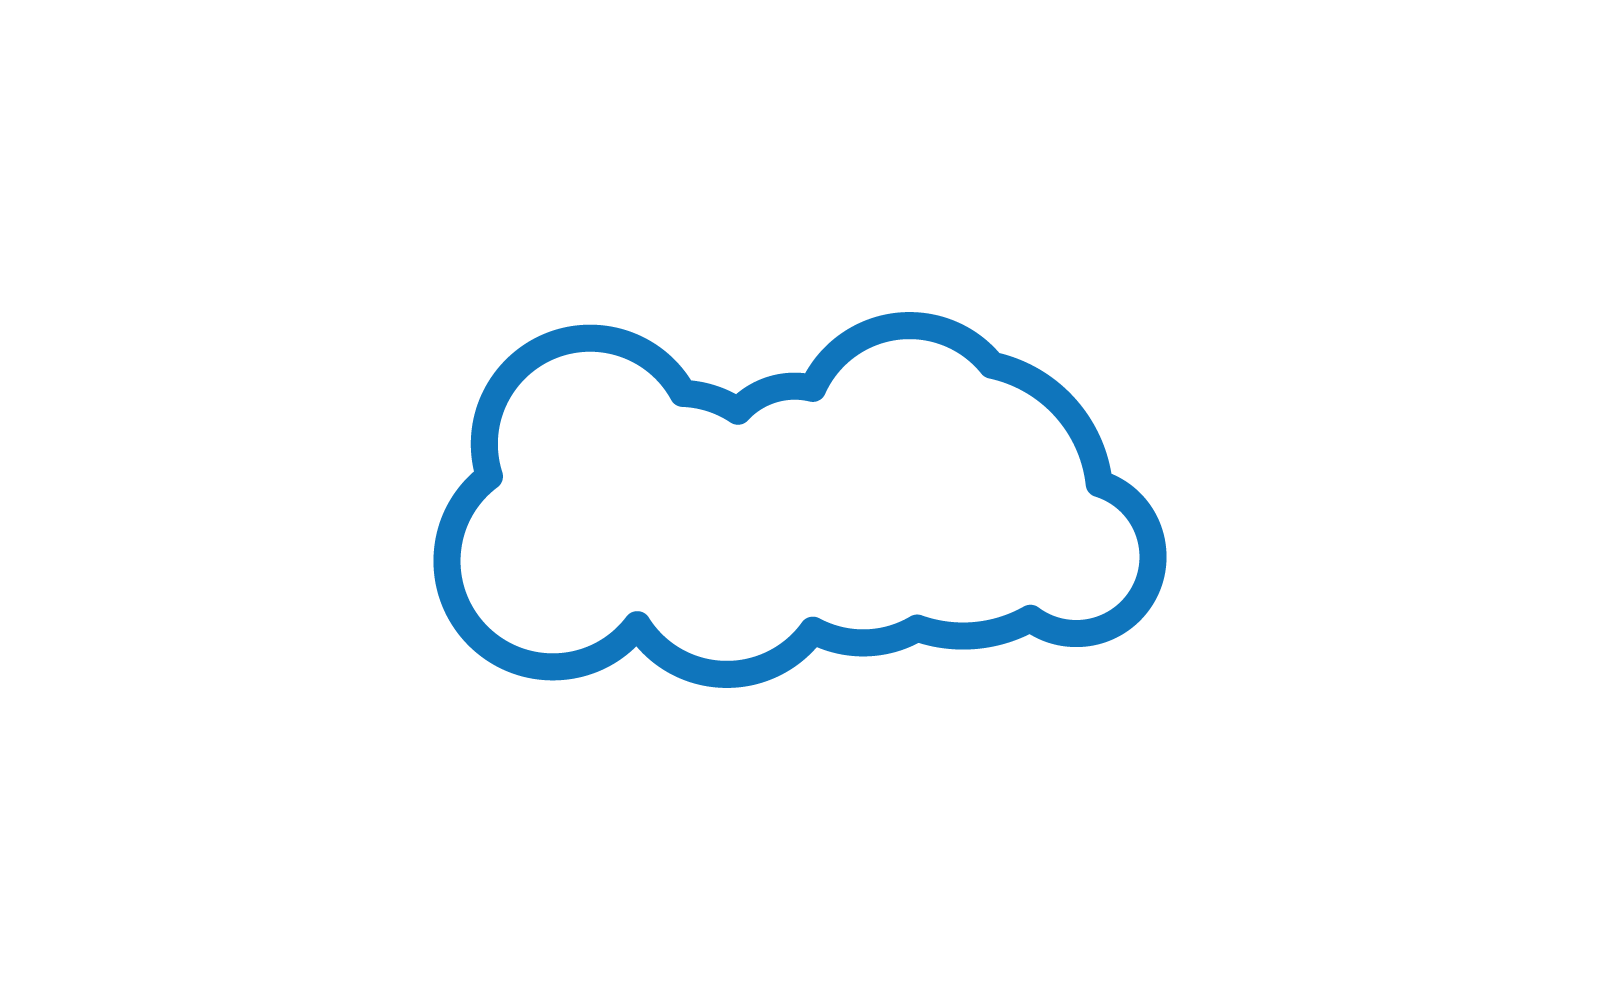 Szablon wektora ilustracji logo chmury